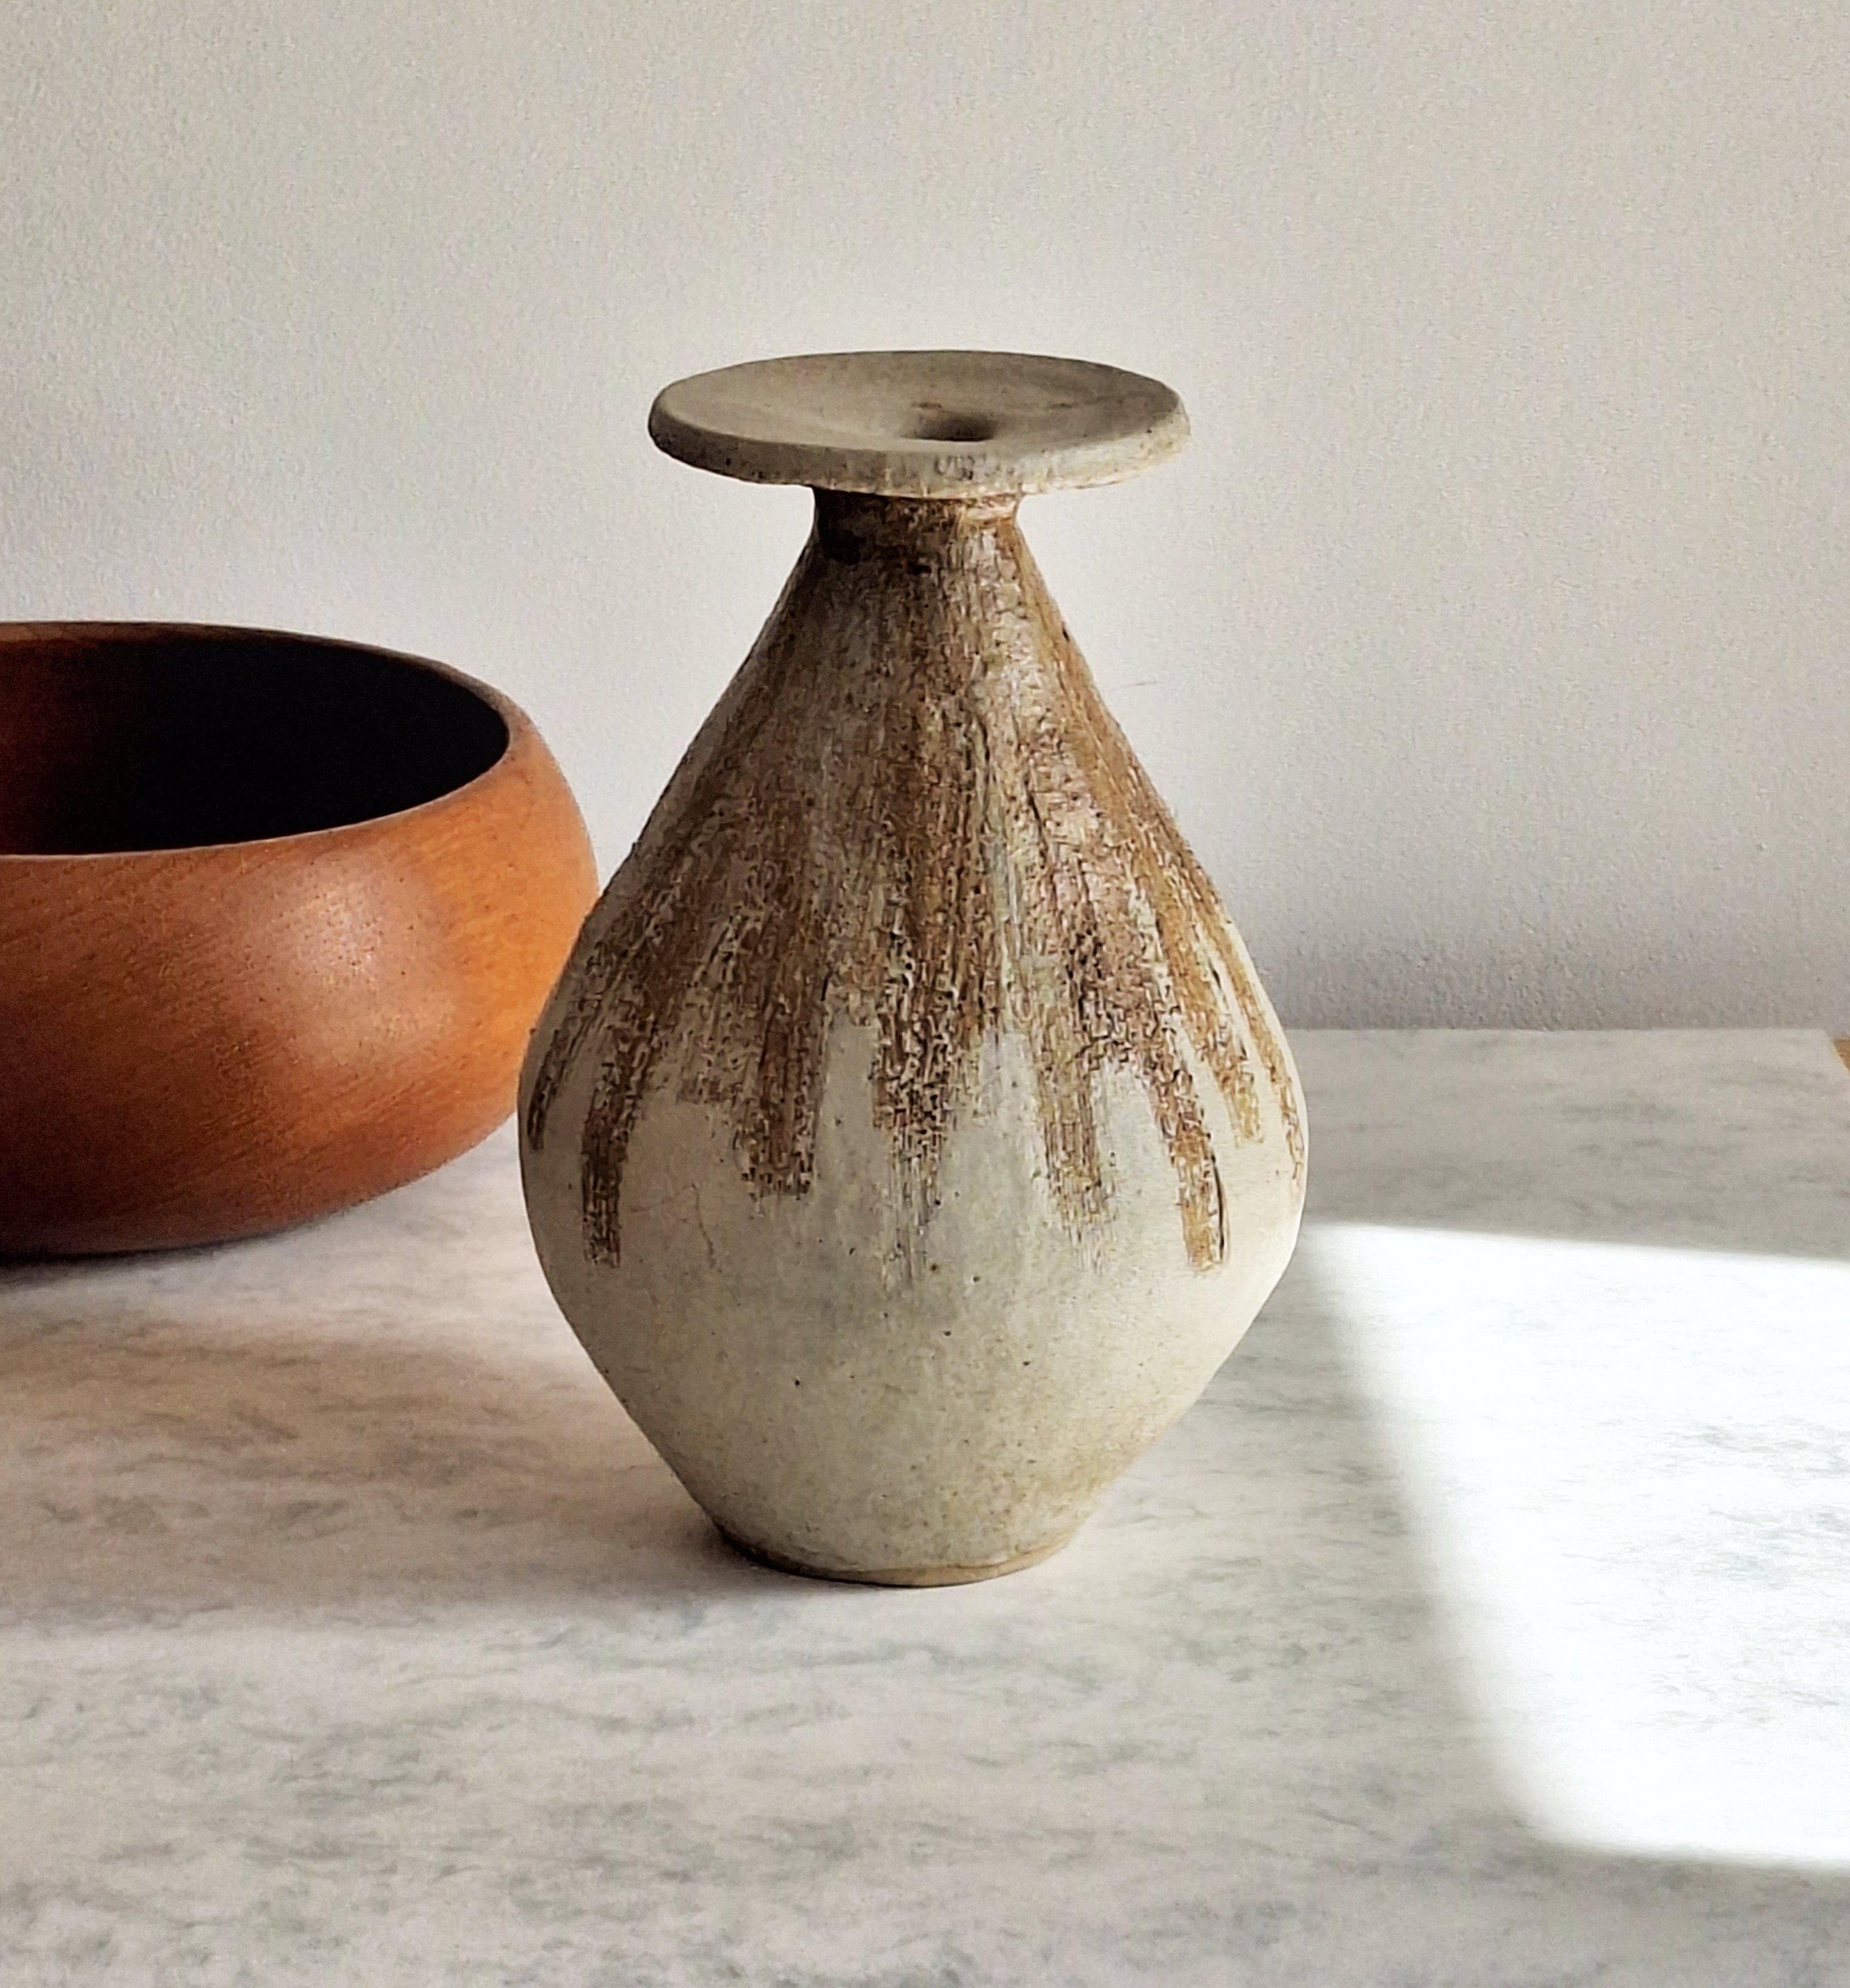 Eine auffallend stilvolle Vase aus Studio-Keramik in abgerundeter, bauchiger Tropfenform im typischen Stil der Mid-Century-Moderne, ein elegantes und dennoch substanzielles Stück.

Diese schwere, runde Vase aus Steinzeug verjüngt sich nach oben hin